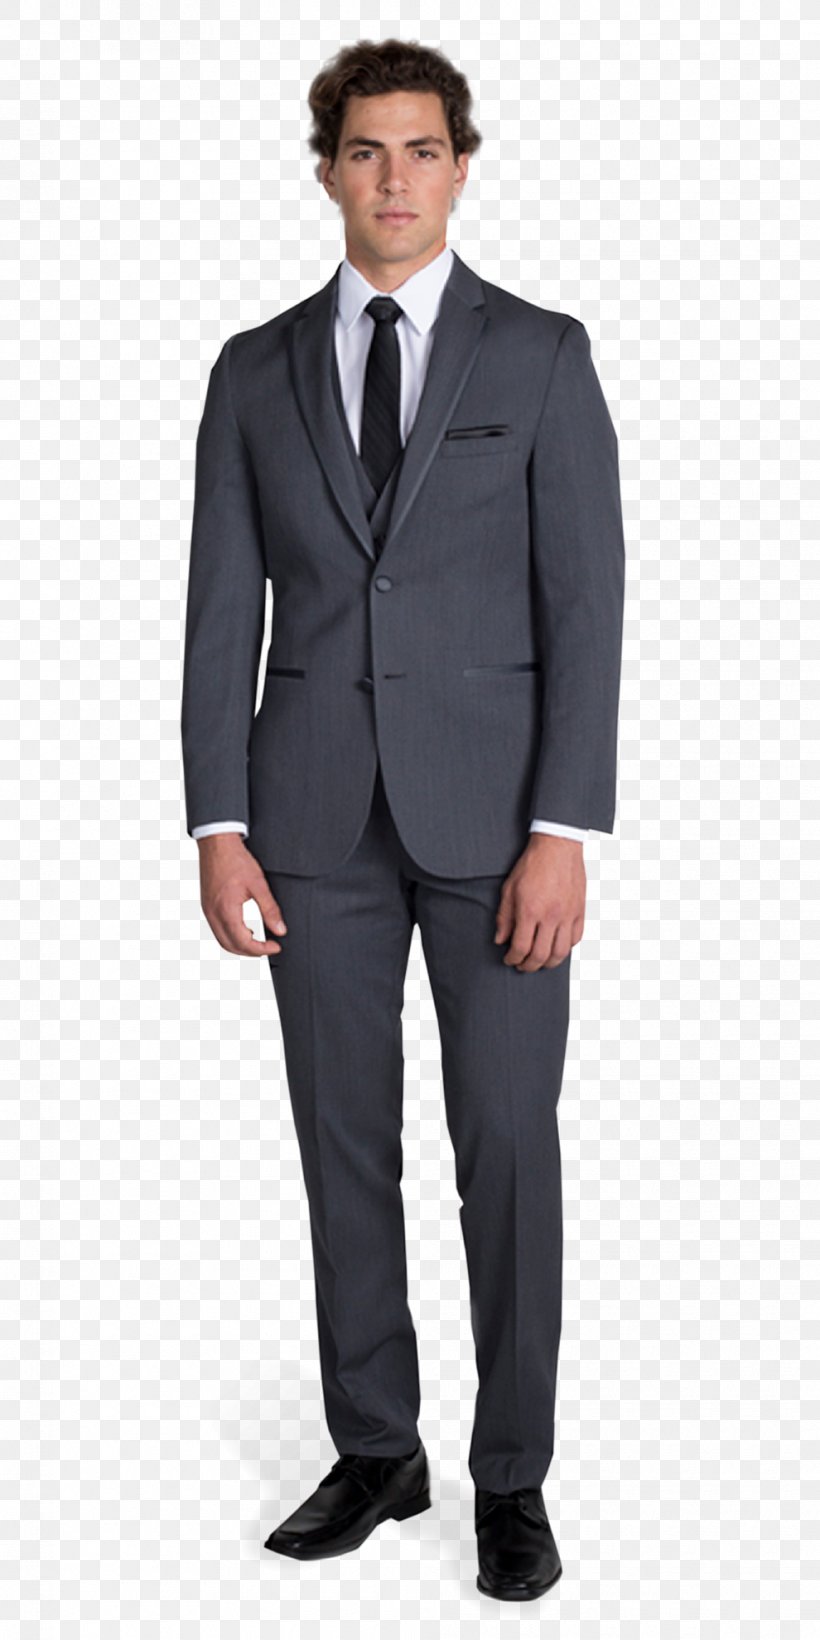 Suit Lapel Clothing Tuxedo Button, PNG, 990x1980px, Suit, Blazer, Business, Businessperson, Button Download Free